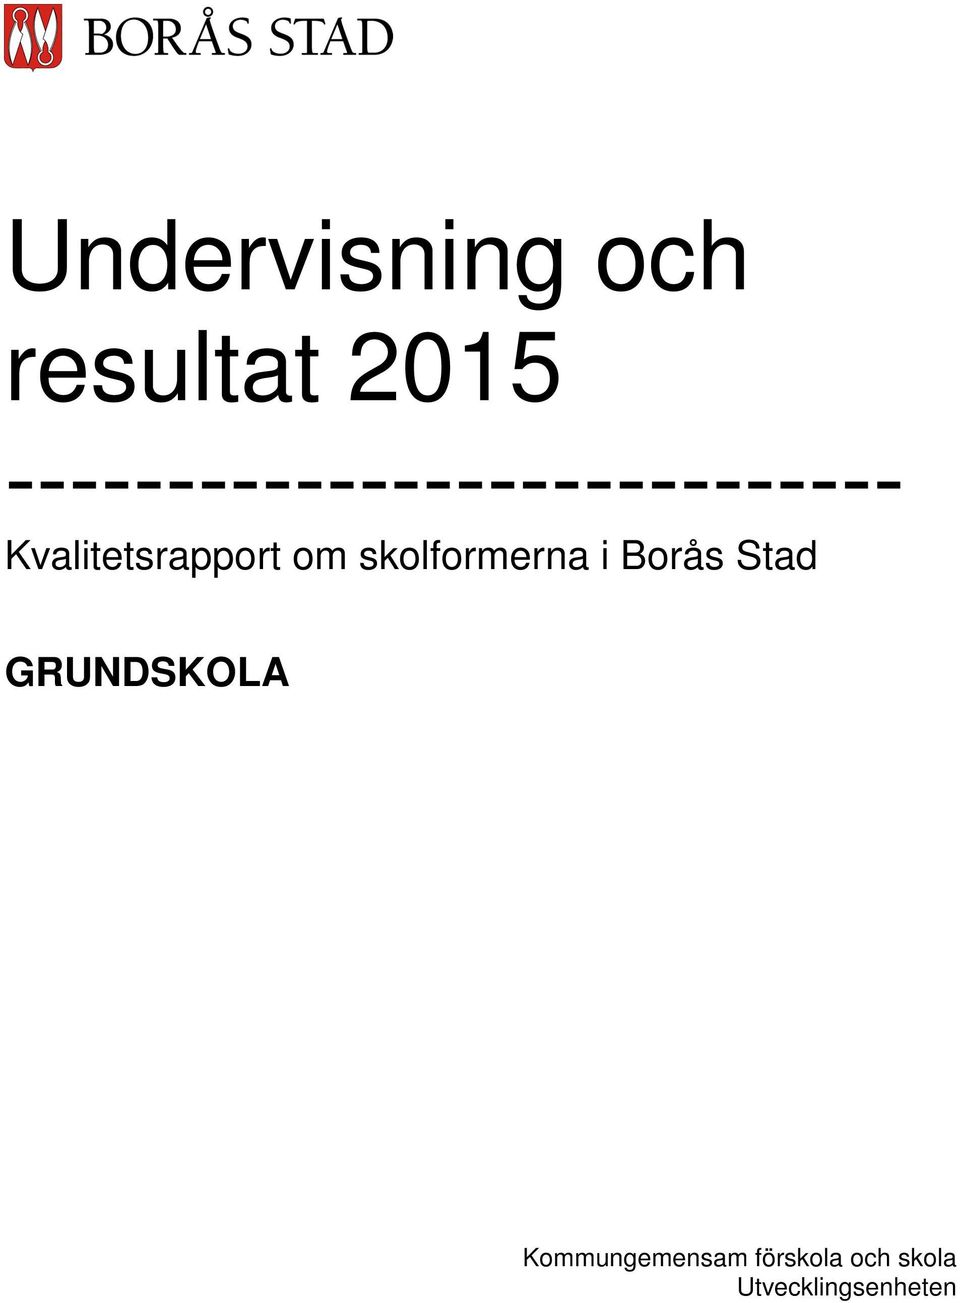 Kvalitetsrapport om skolformerna i Borås